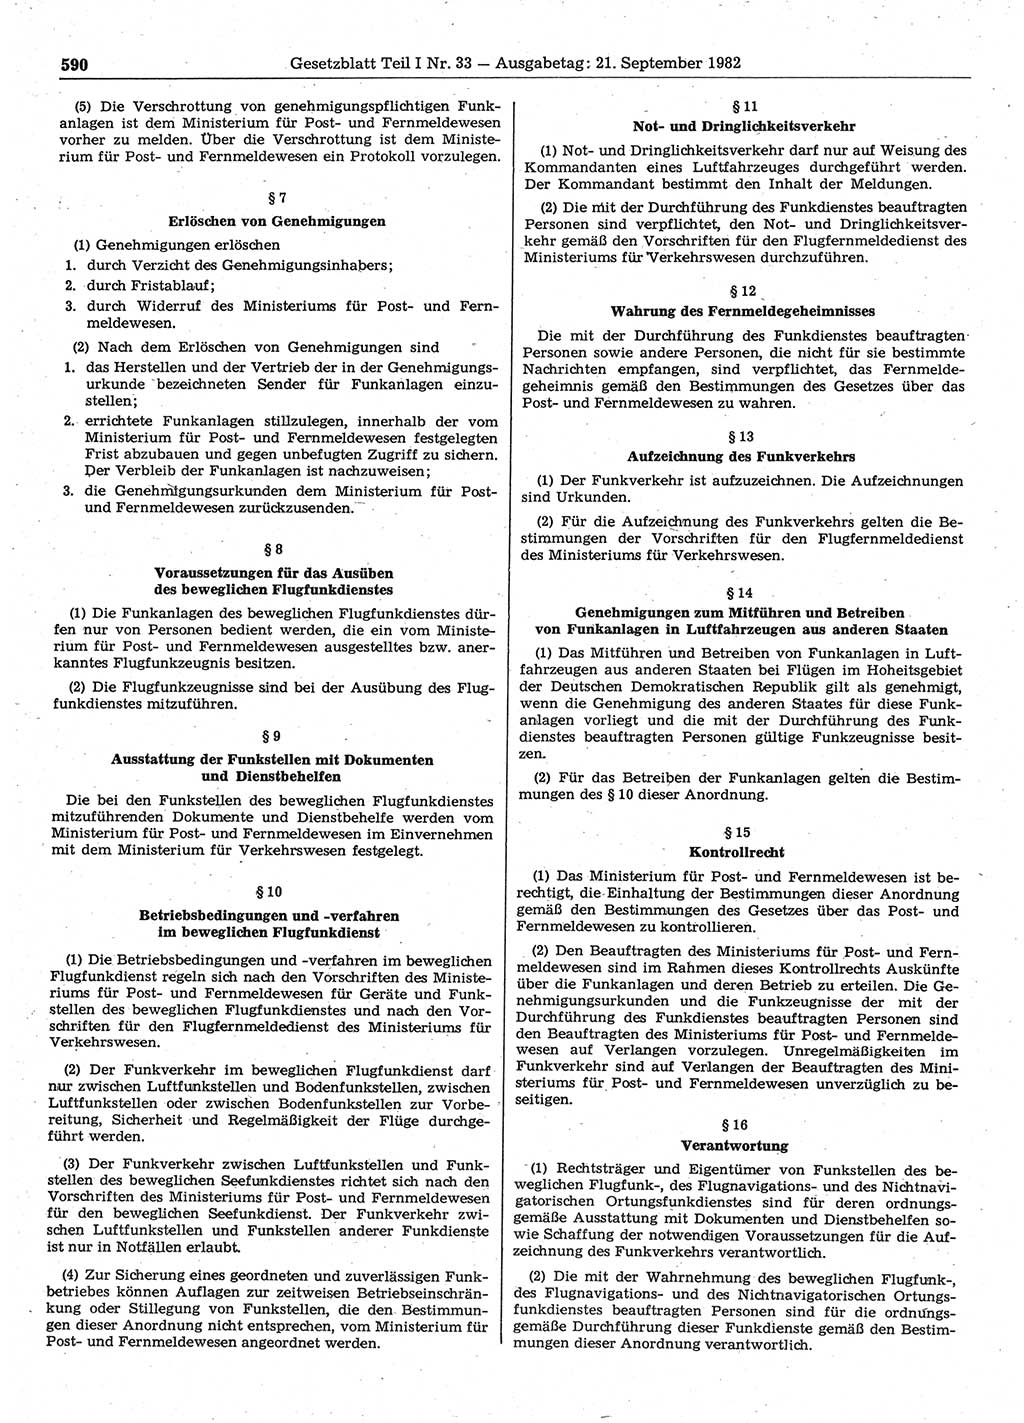 Gesetzblatt (GBl.) der Deutschen Demokratischen Republik (DDR) Teil Ⅰ 1982, Seite 590 (GBl. DDR Ⅰ 1982, S. 590)